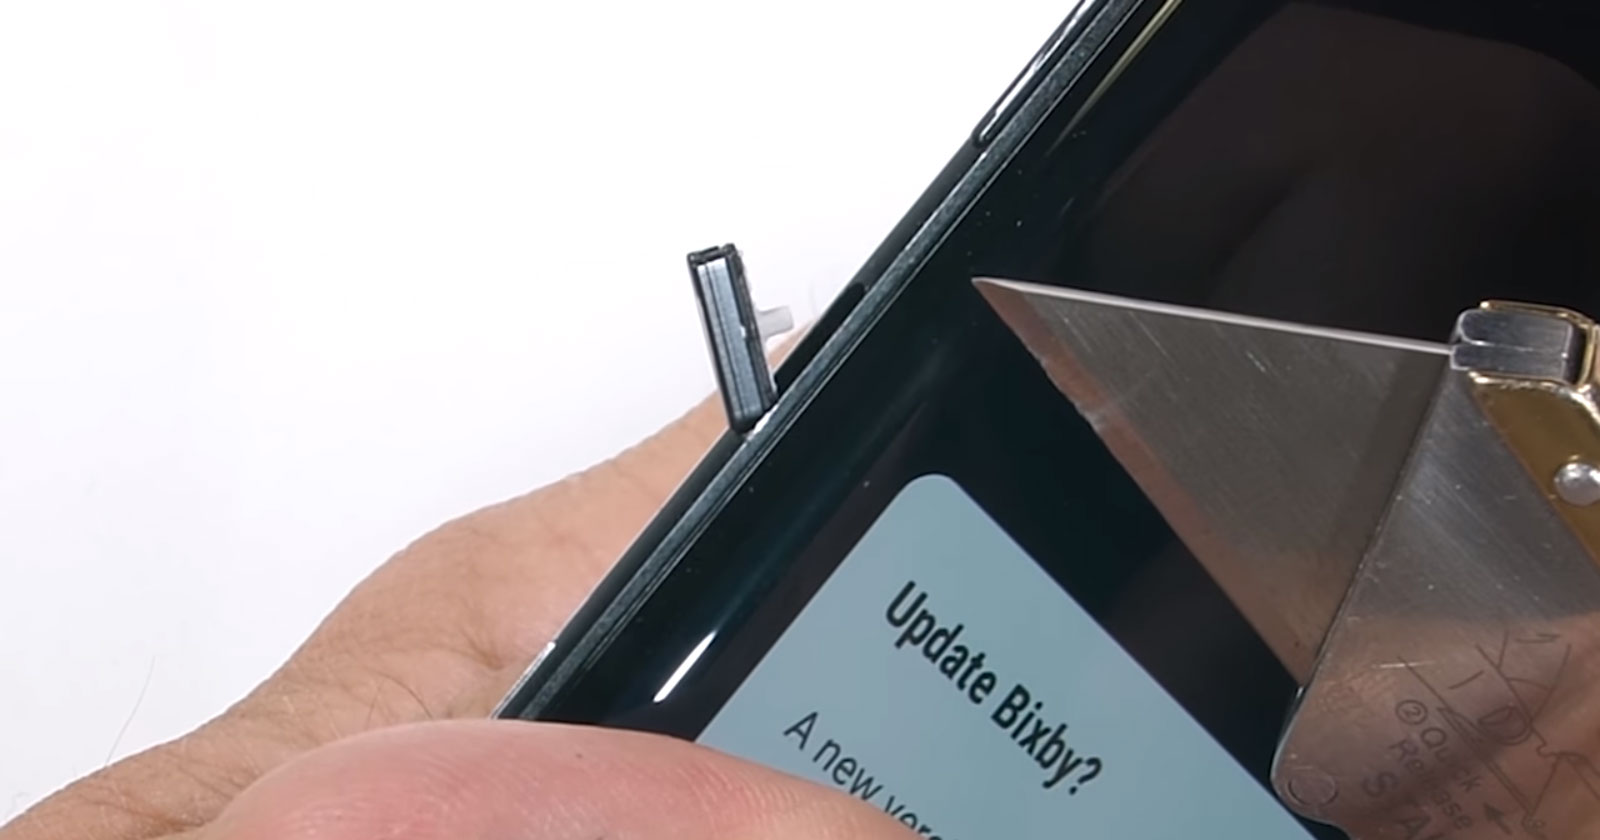 Samsung Galaxy Note 9 - Pruebas de durabilidad por JerryRigEverything 3